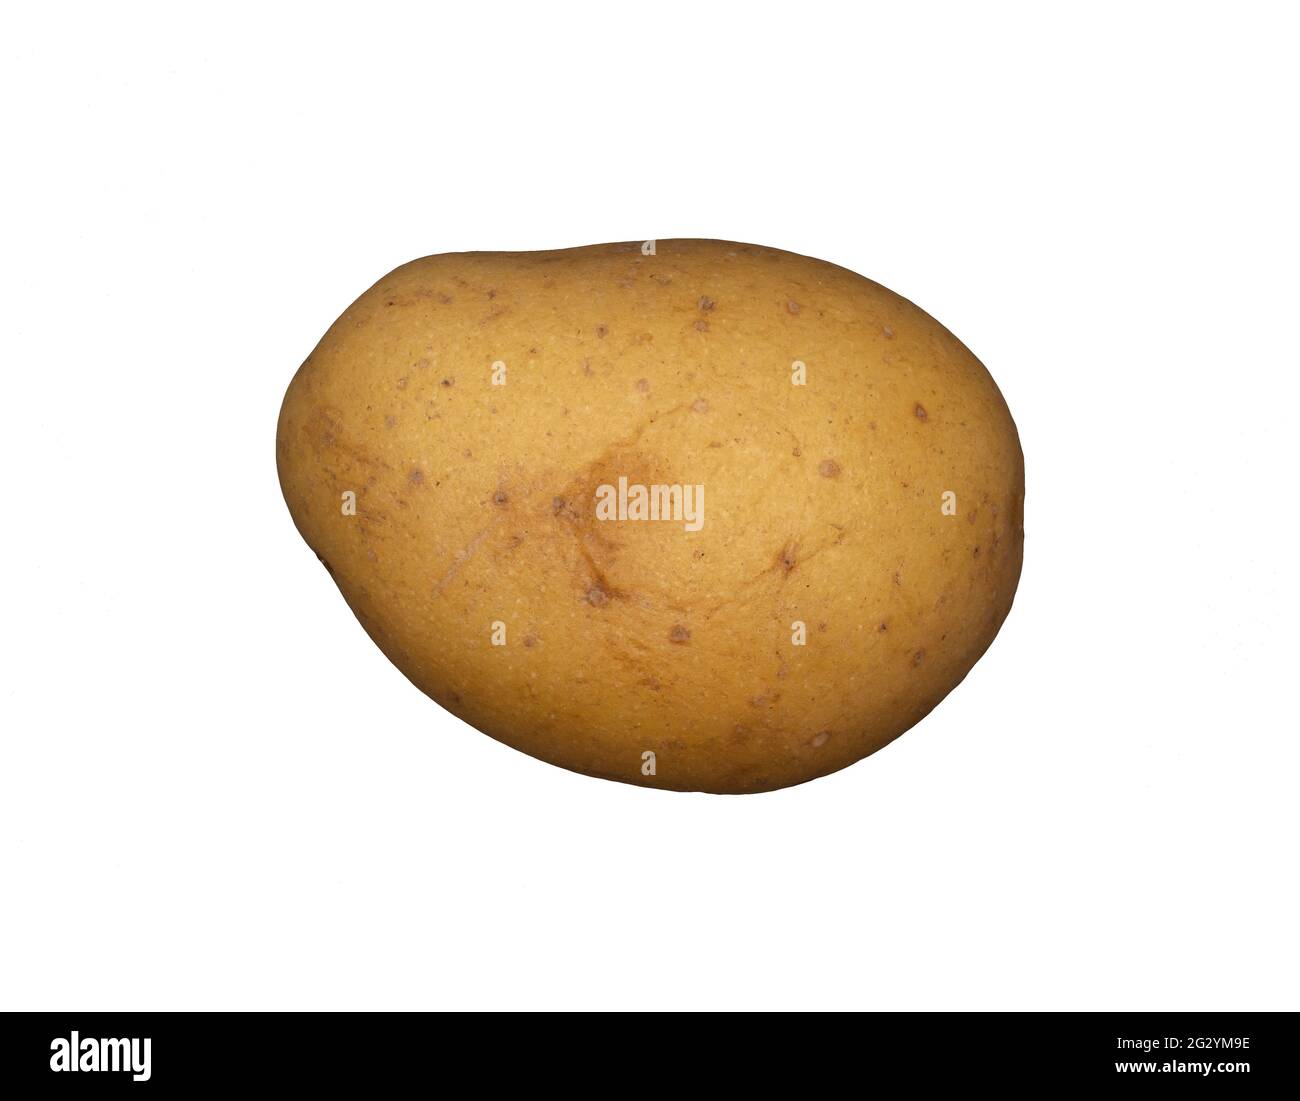 A white potato on a plain white background Stock Photo